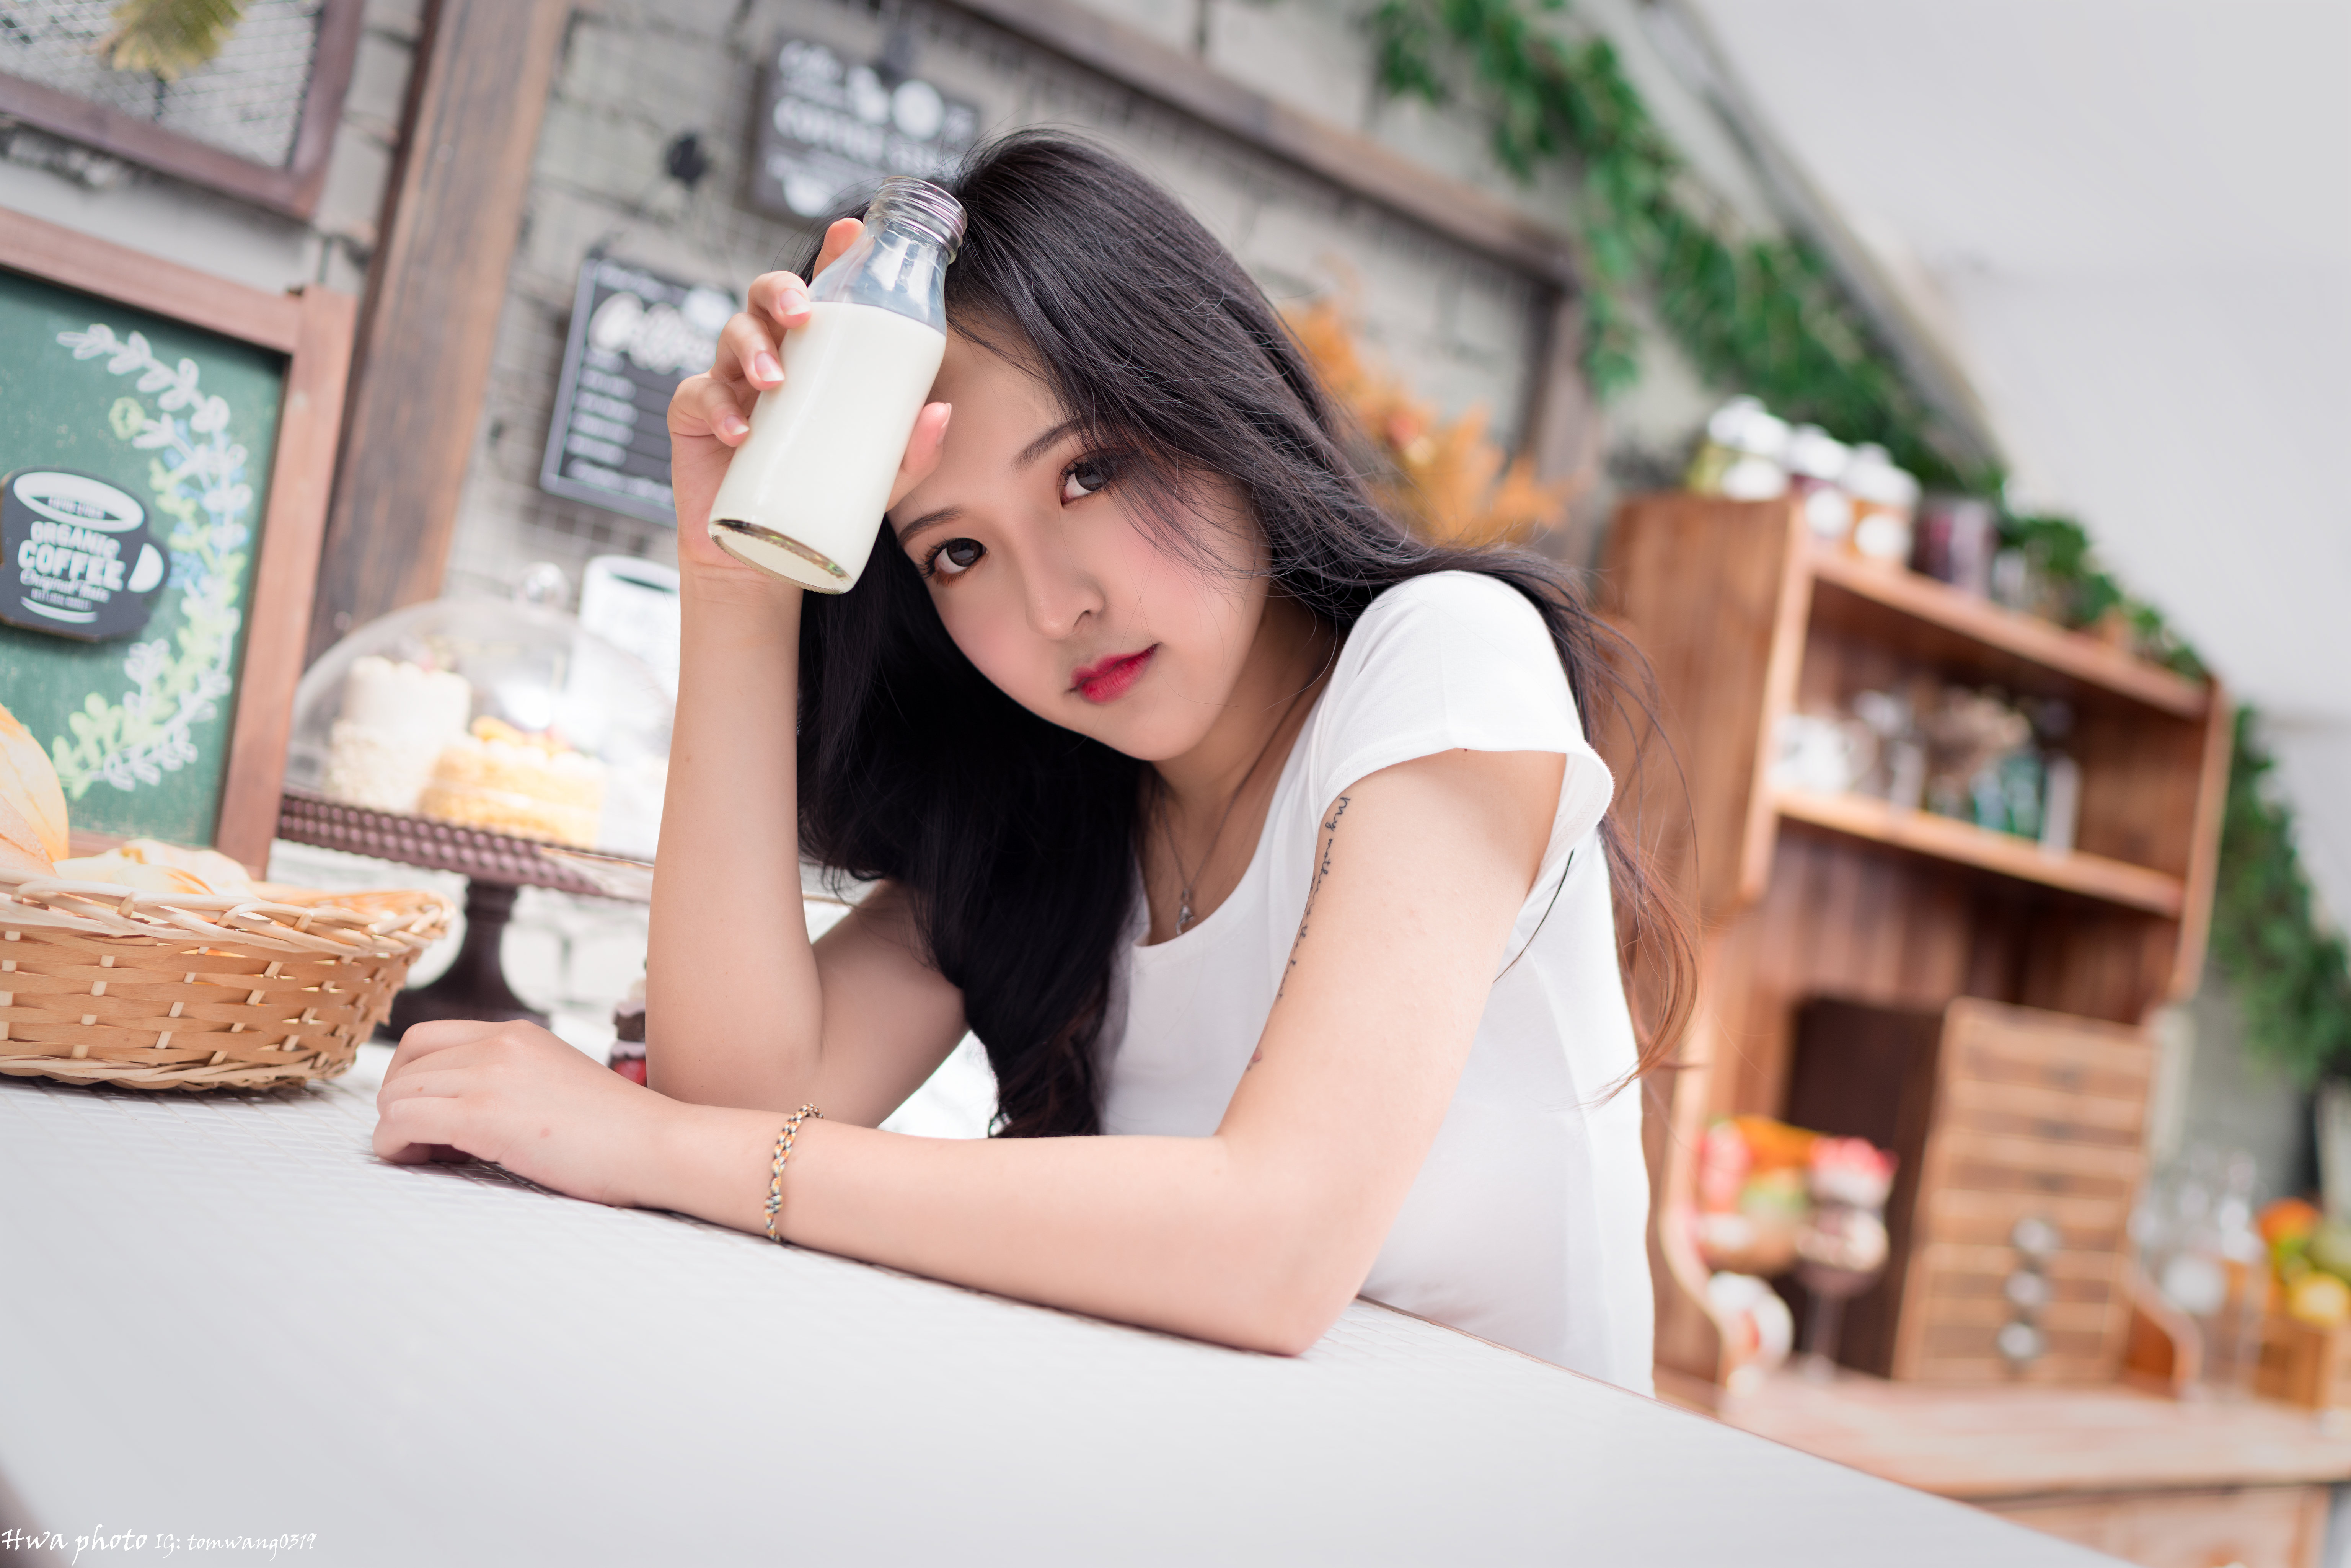 People 6144x4098 Asian model women long hair brunette sitting milk T-shirt table cupboard bracelets cake signs